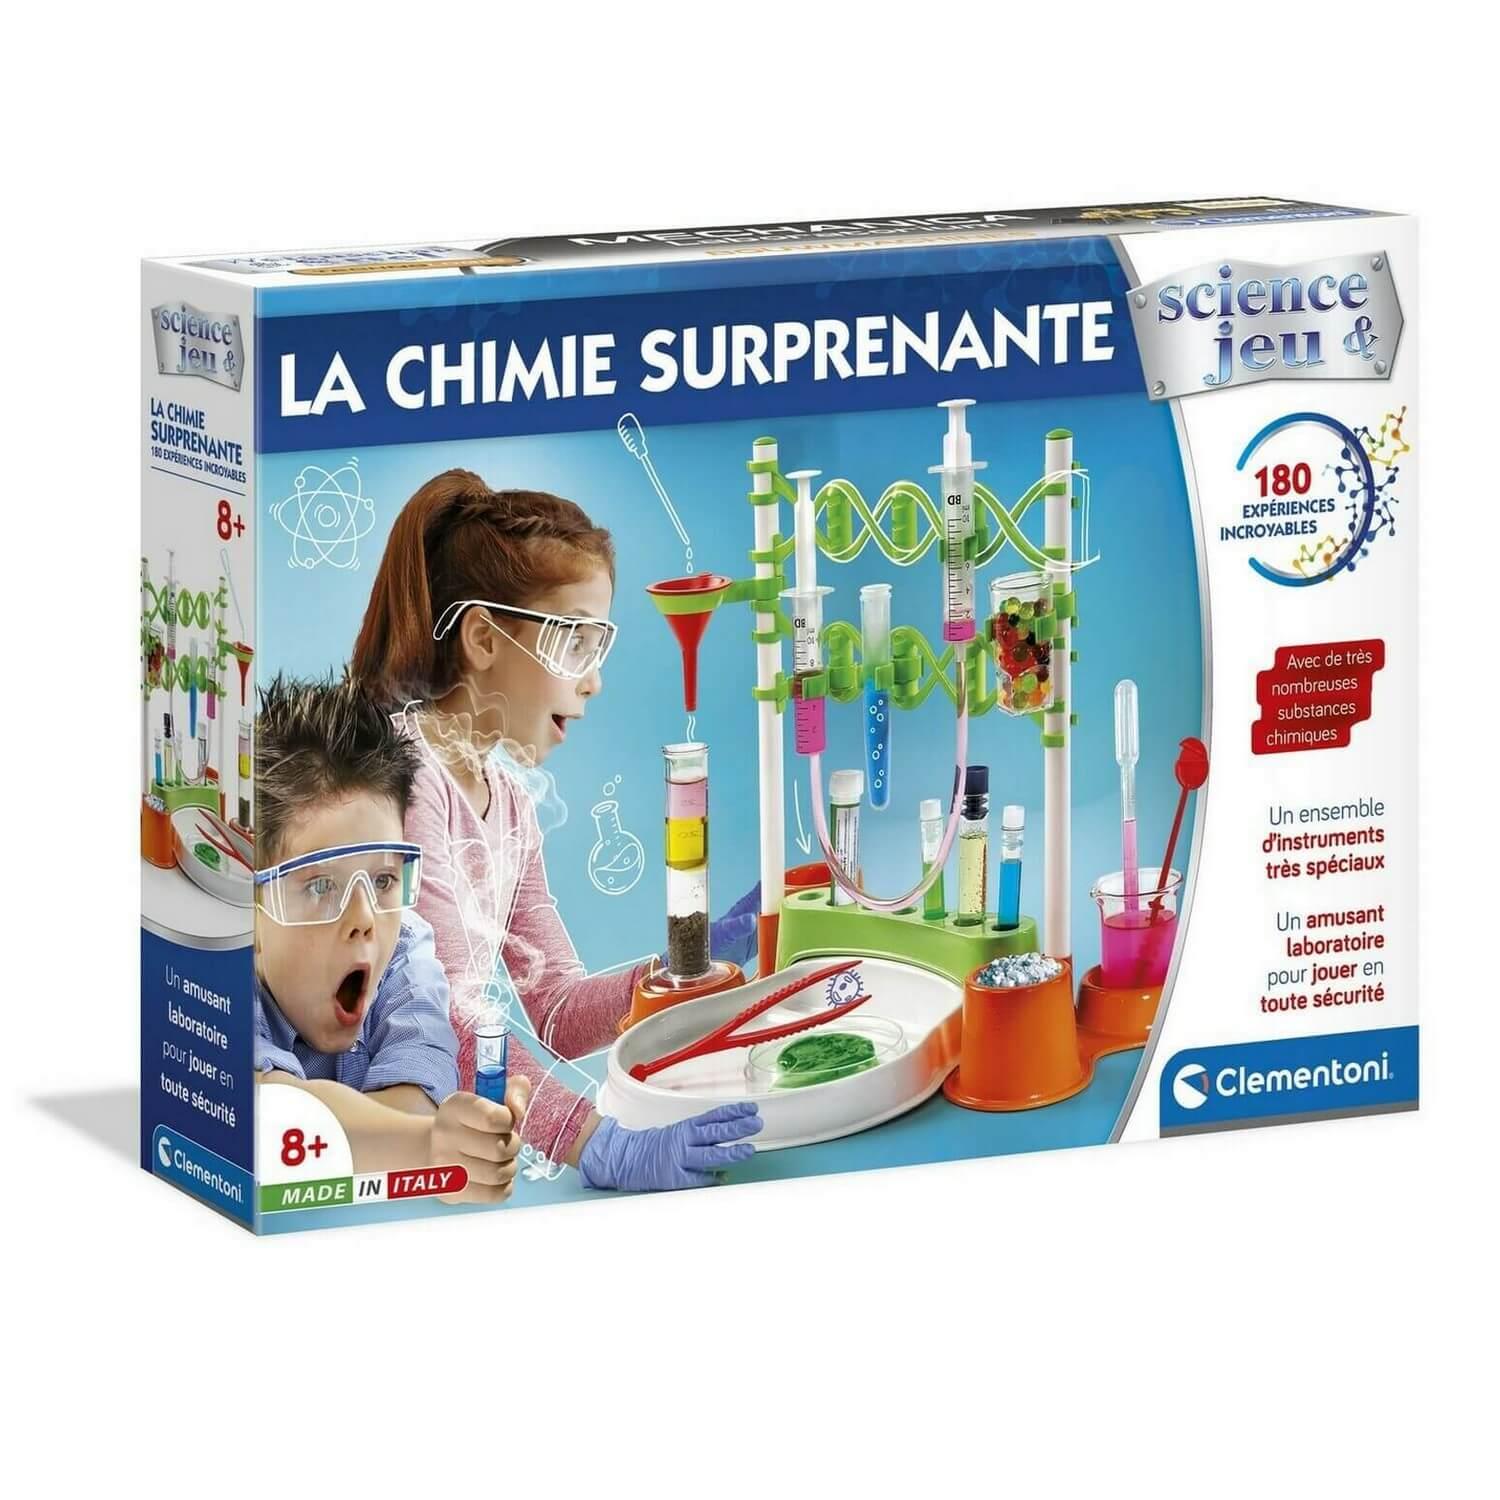 Science et jeu : La chimie surprenante - Jeux et jouets Clementoni